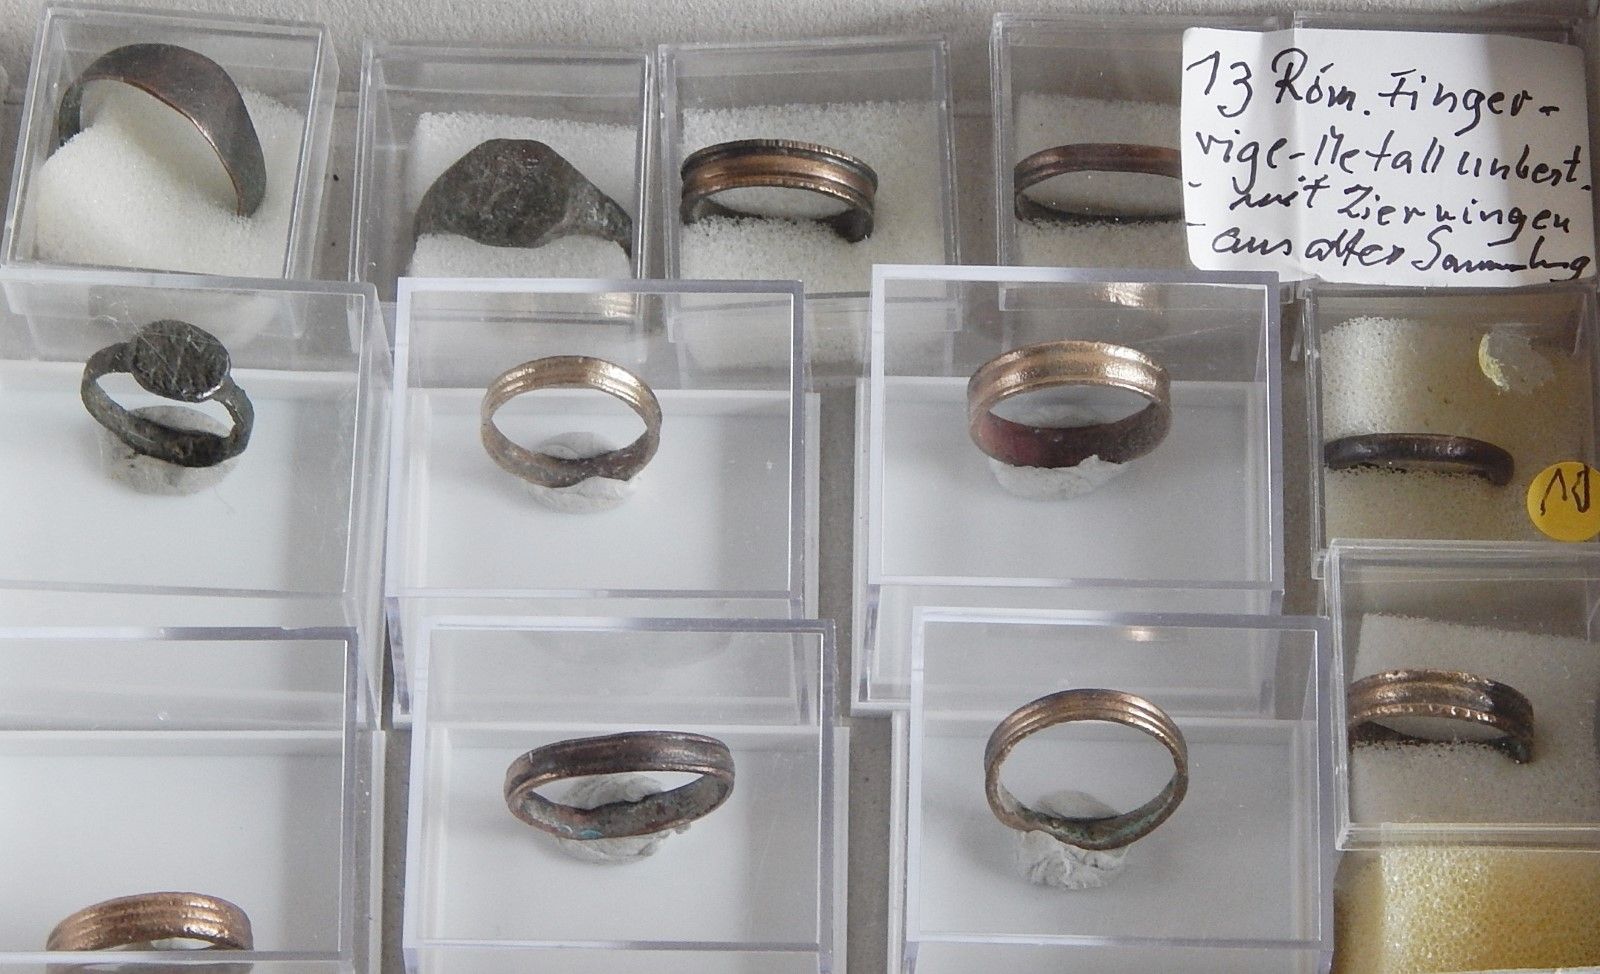 Null 来自旧收藏的 13 枚罗马戒指，混合在一起